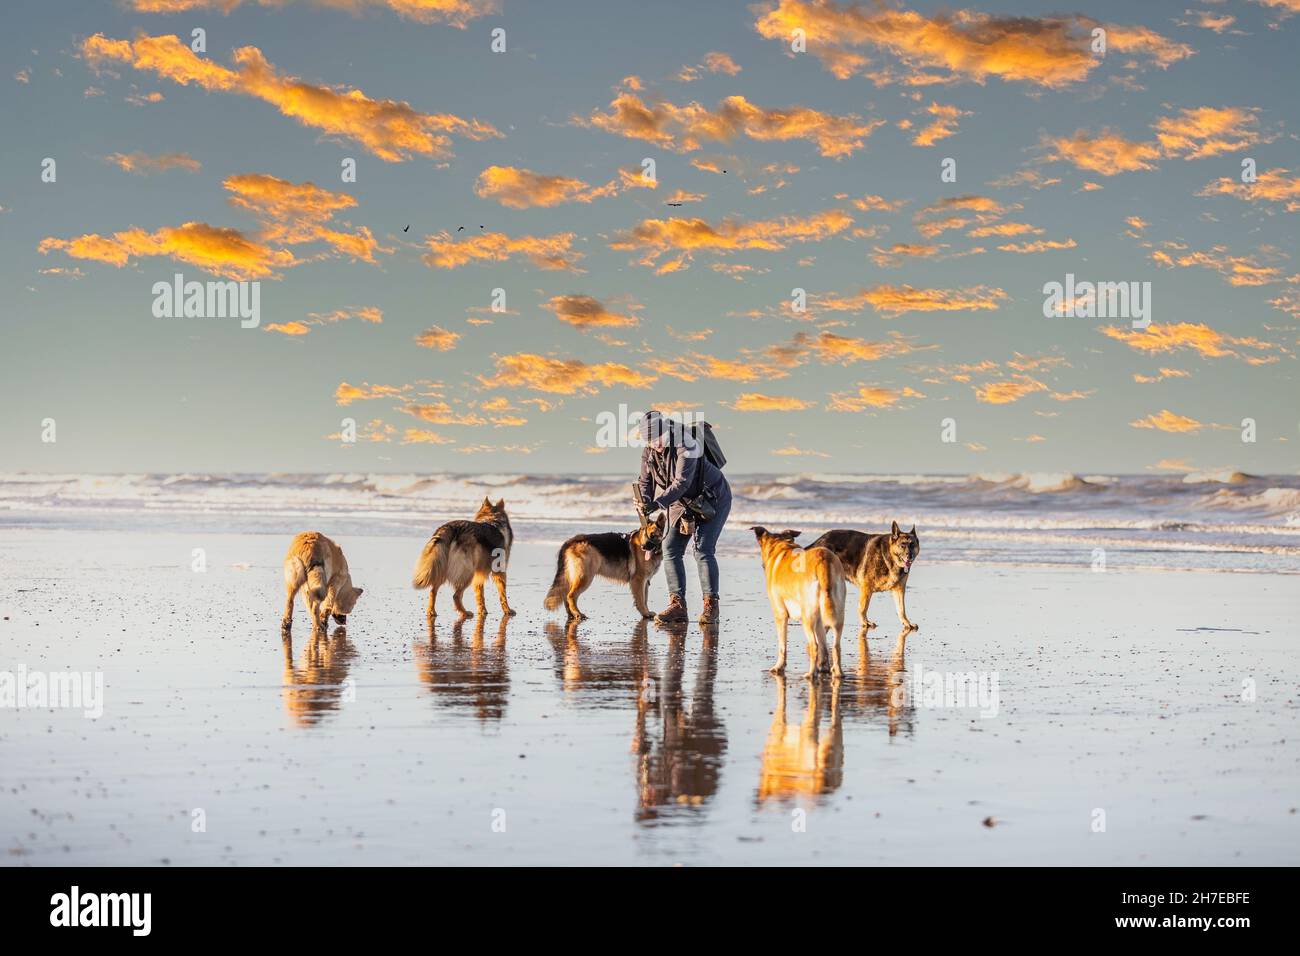 Frau mit fünf deutschen Schäferhunden am Strand im warmen Licht der aufgehenden Sonne vor dem Hintergrund der verstreuten orangen Wolken und der Brandung des Meeres Stockfoto